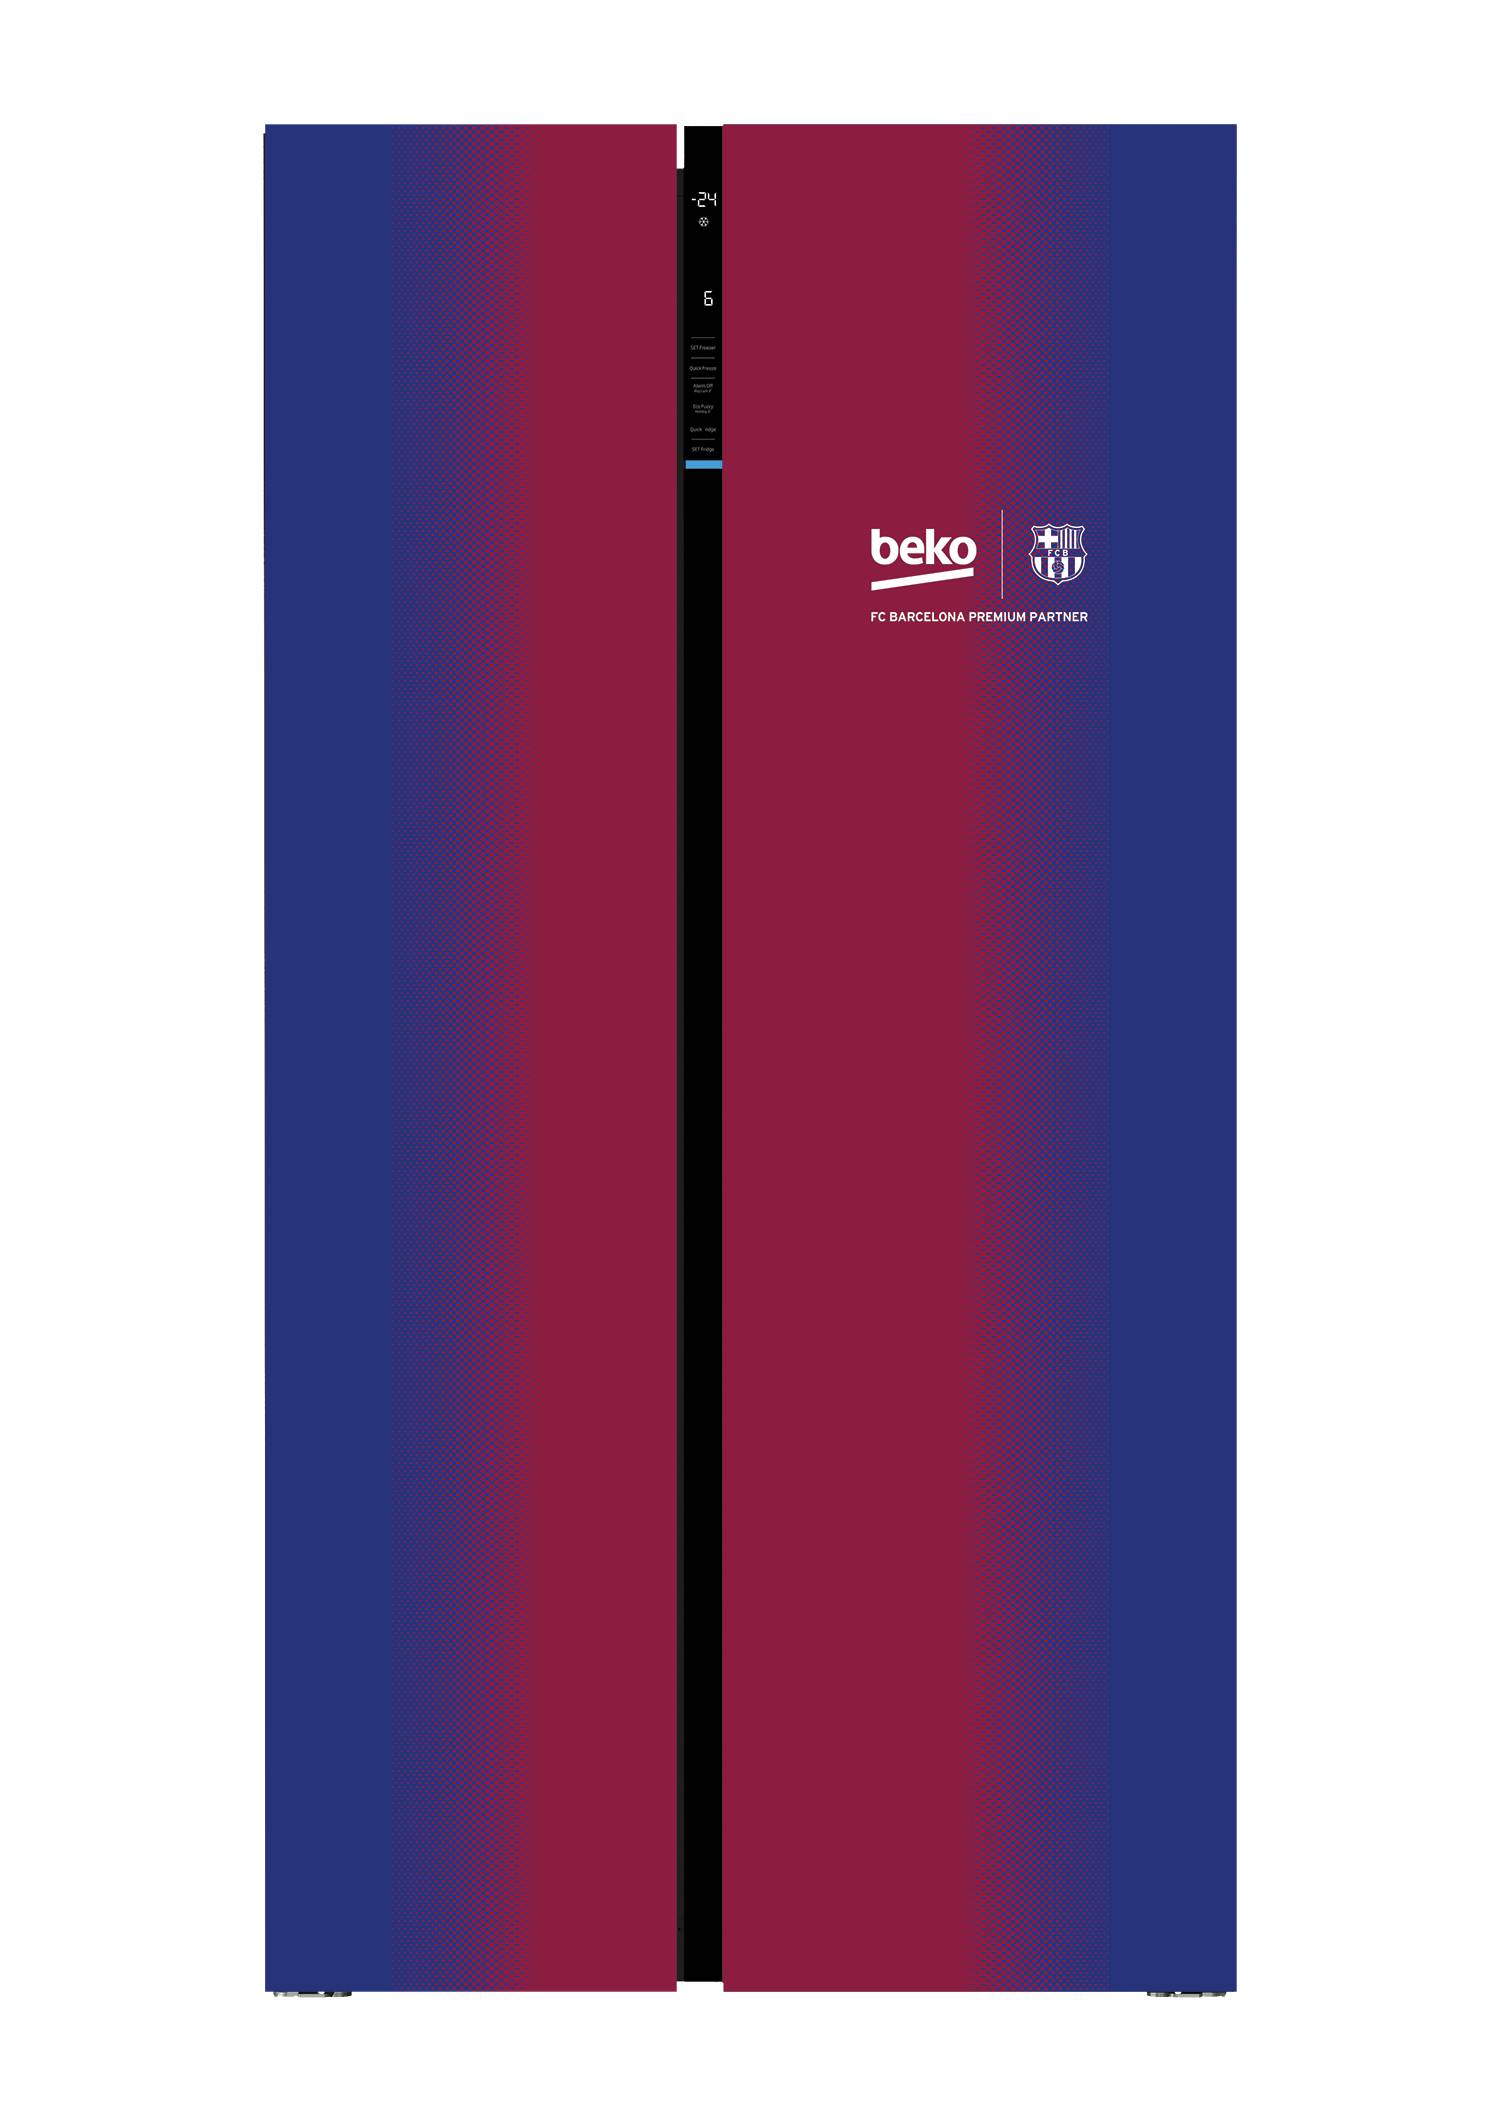 Za prave fanove: Beko uređaji sada i u bojama FC Barcelone